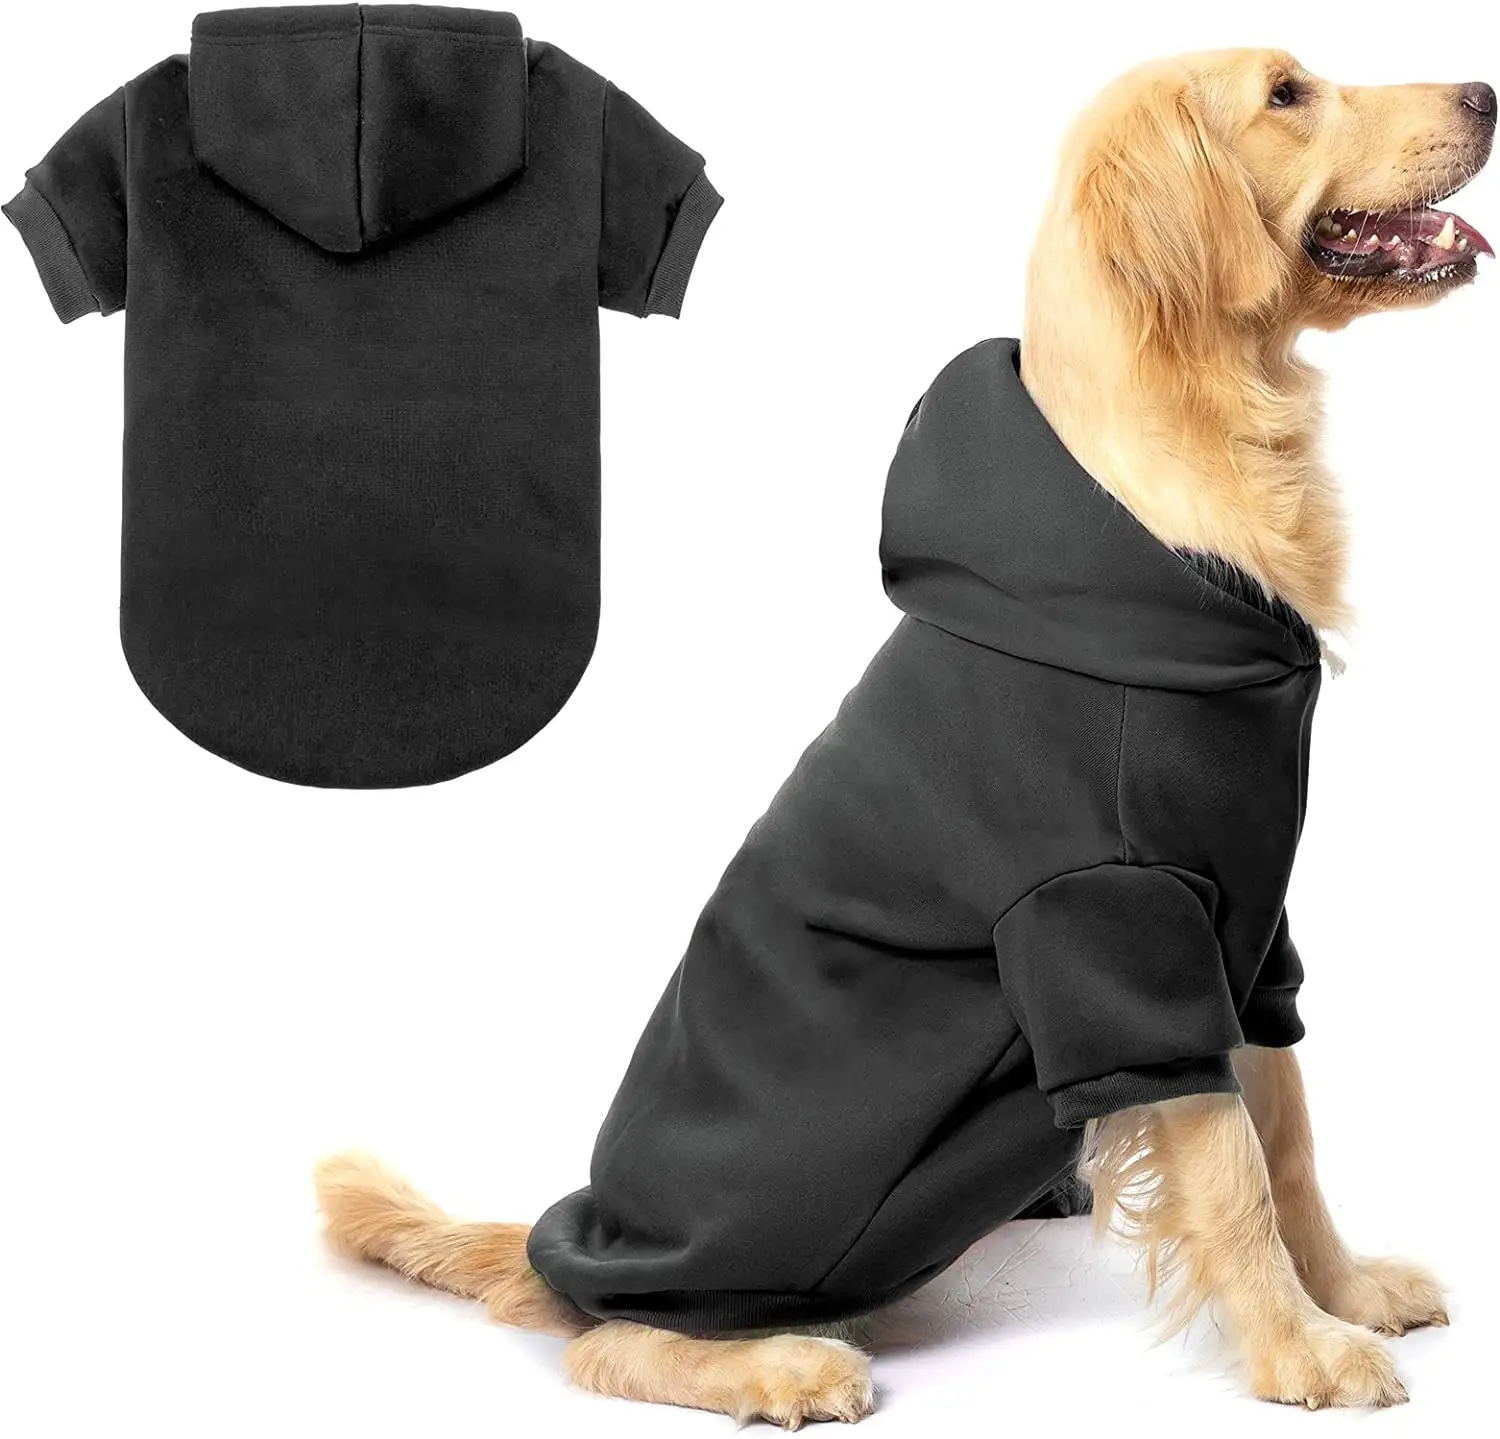 ชุดเดรสสเวตเตอร์สำหรับสุนัขและเจ้าของเสื้อโค้ทดีไซน์สุดหรู